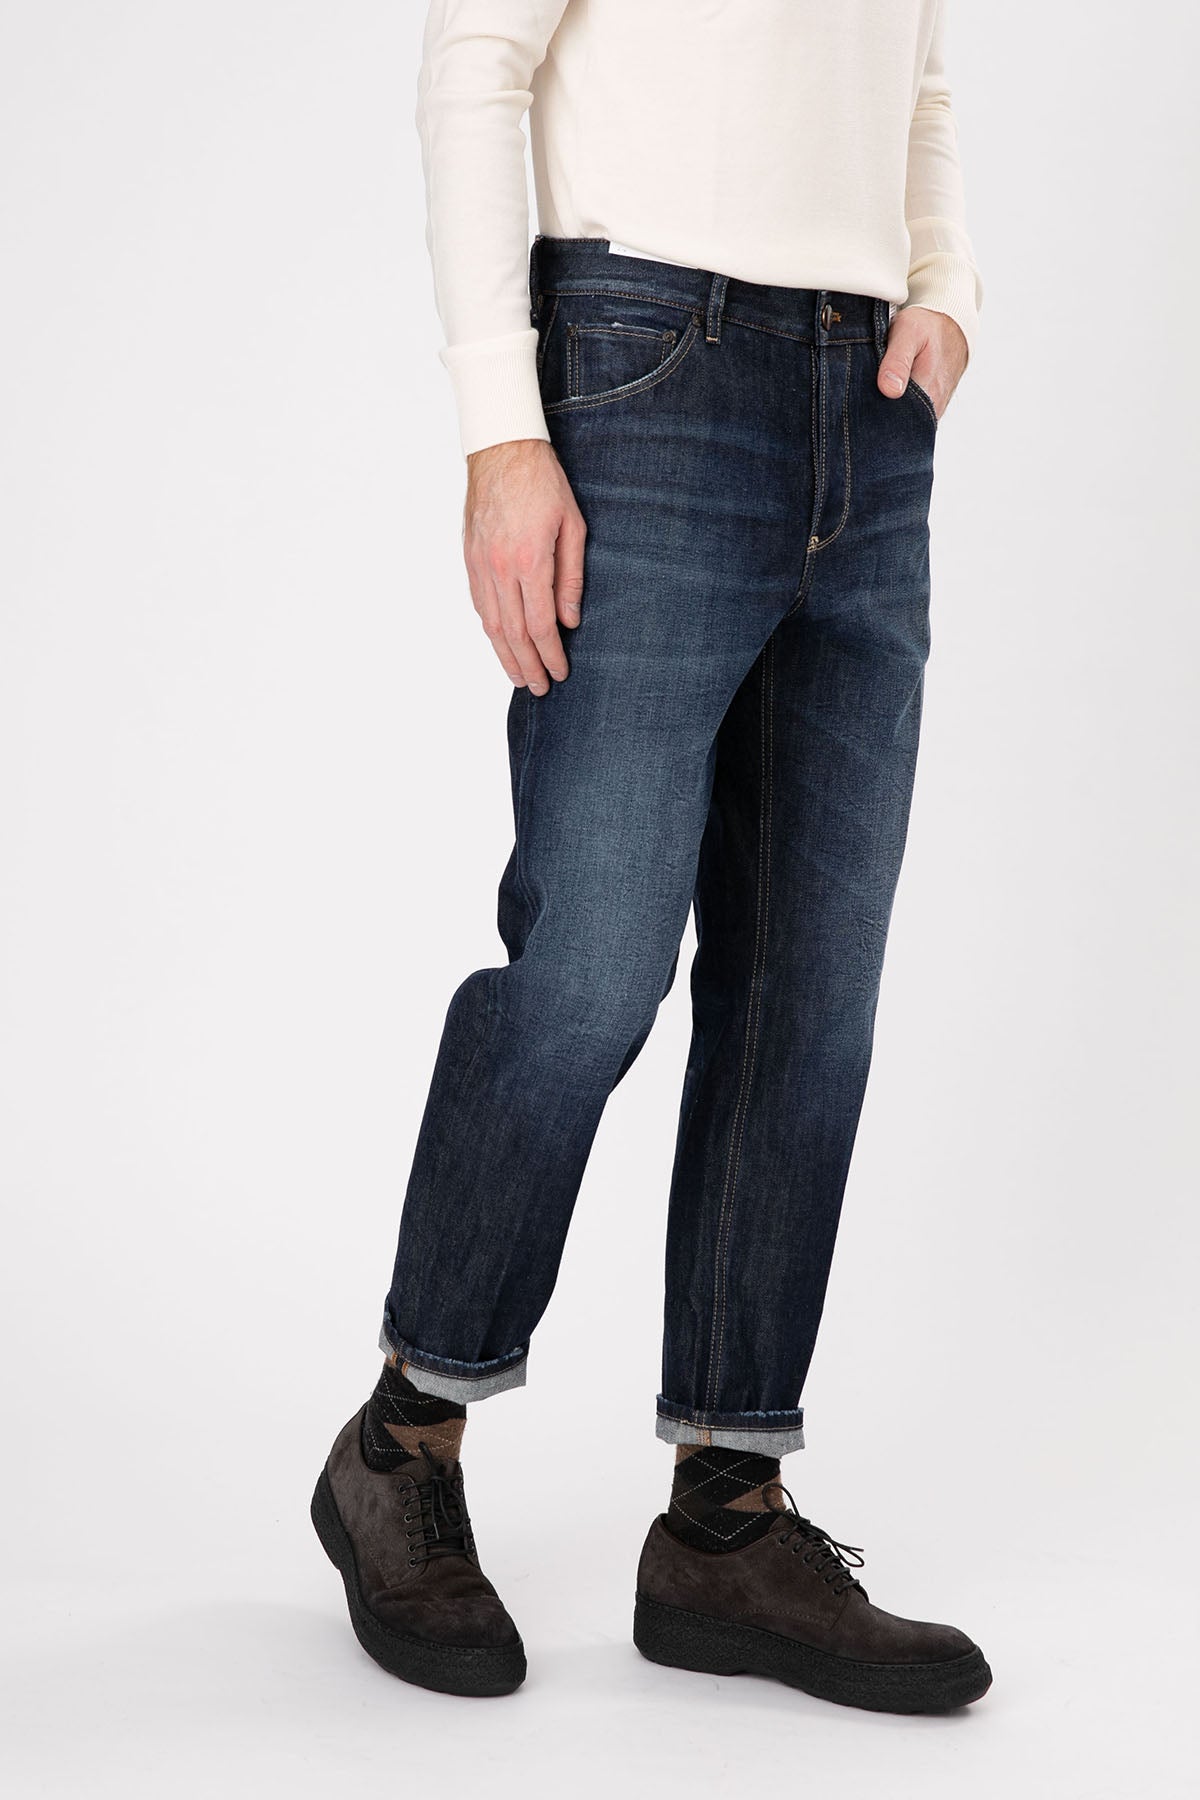 Pantaloni Torino Rebel Slim Fit Jeans-Libas Trendy Fashion Store